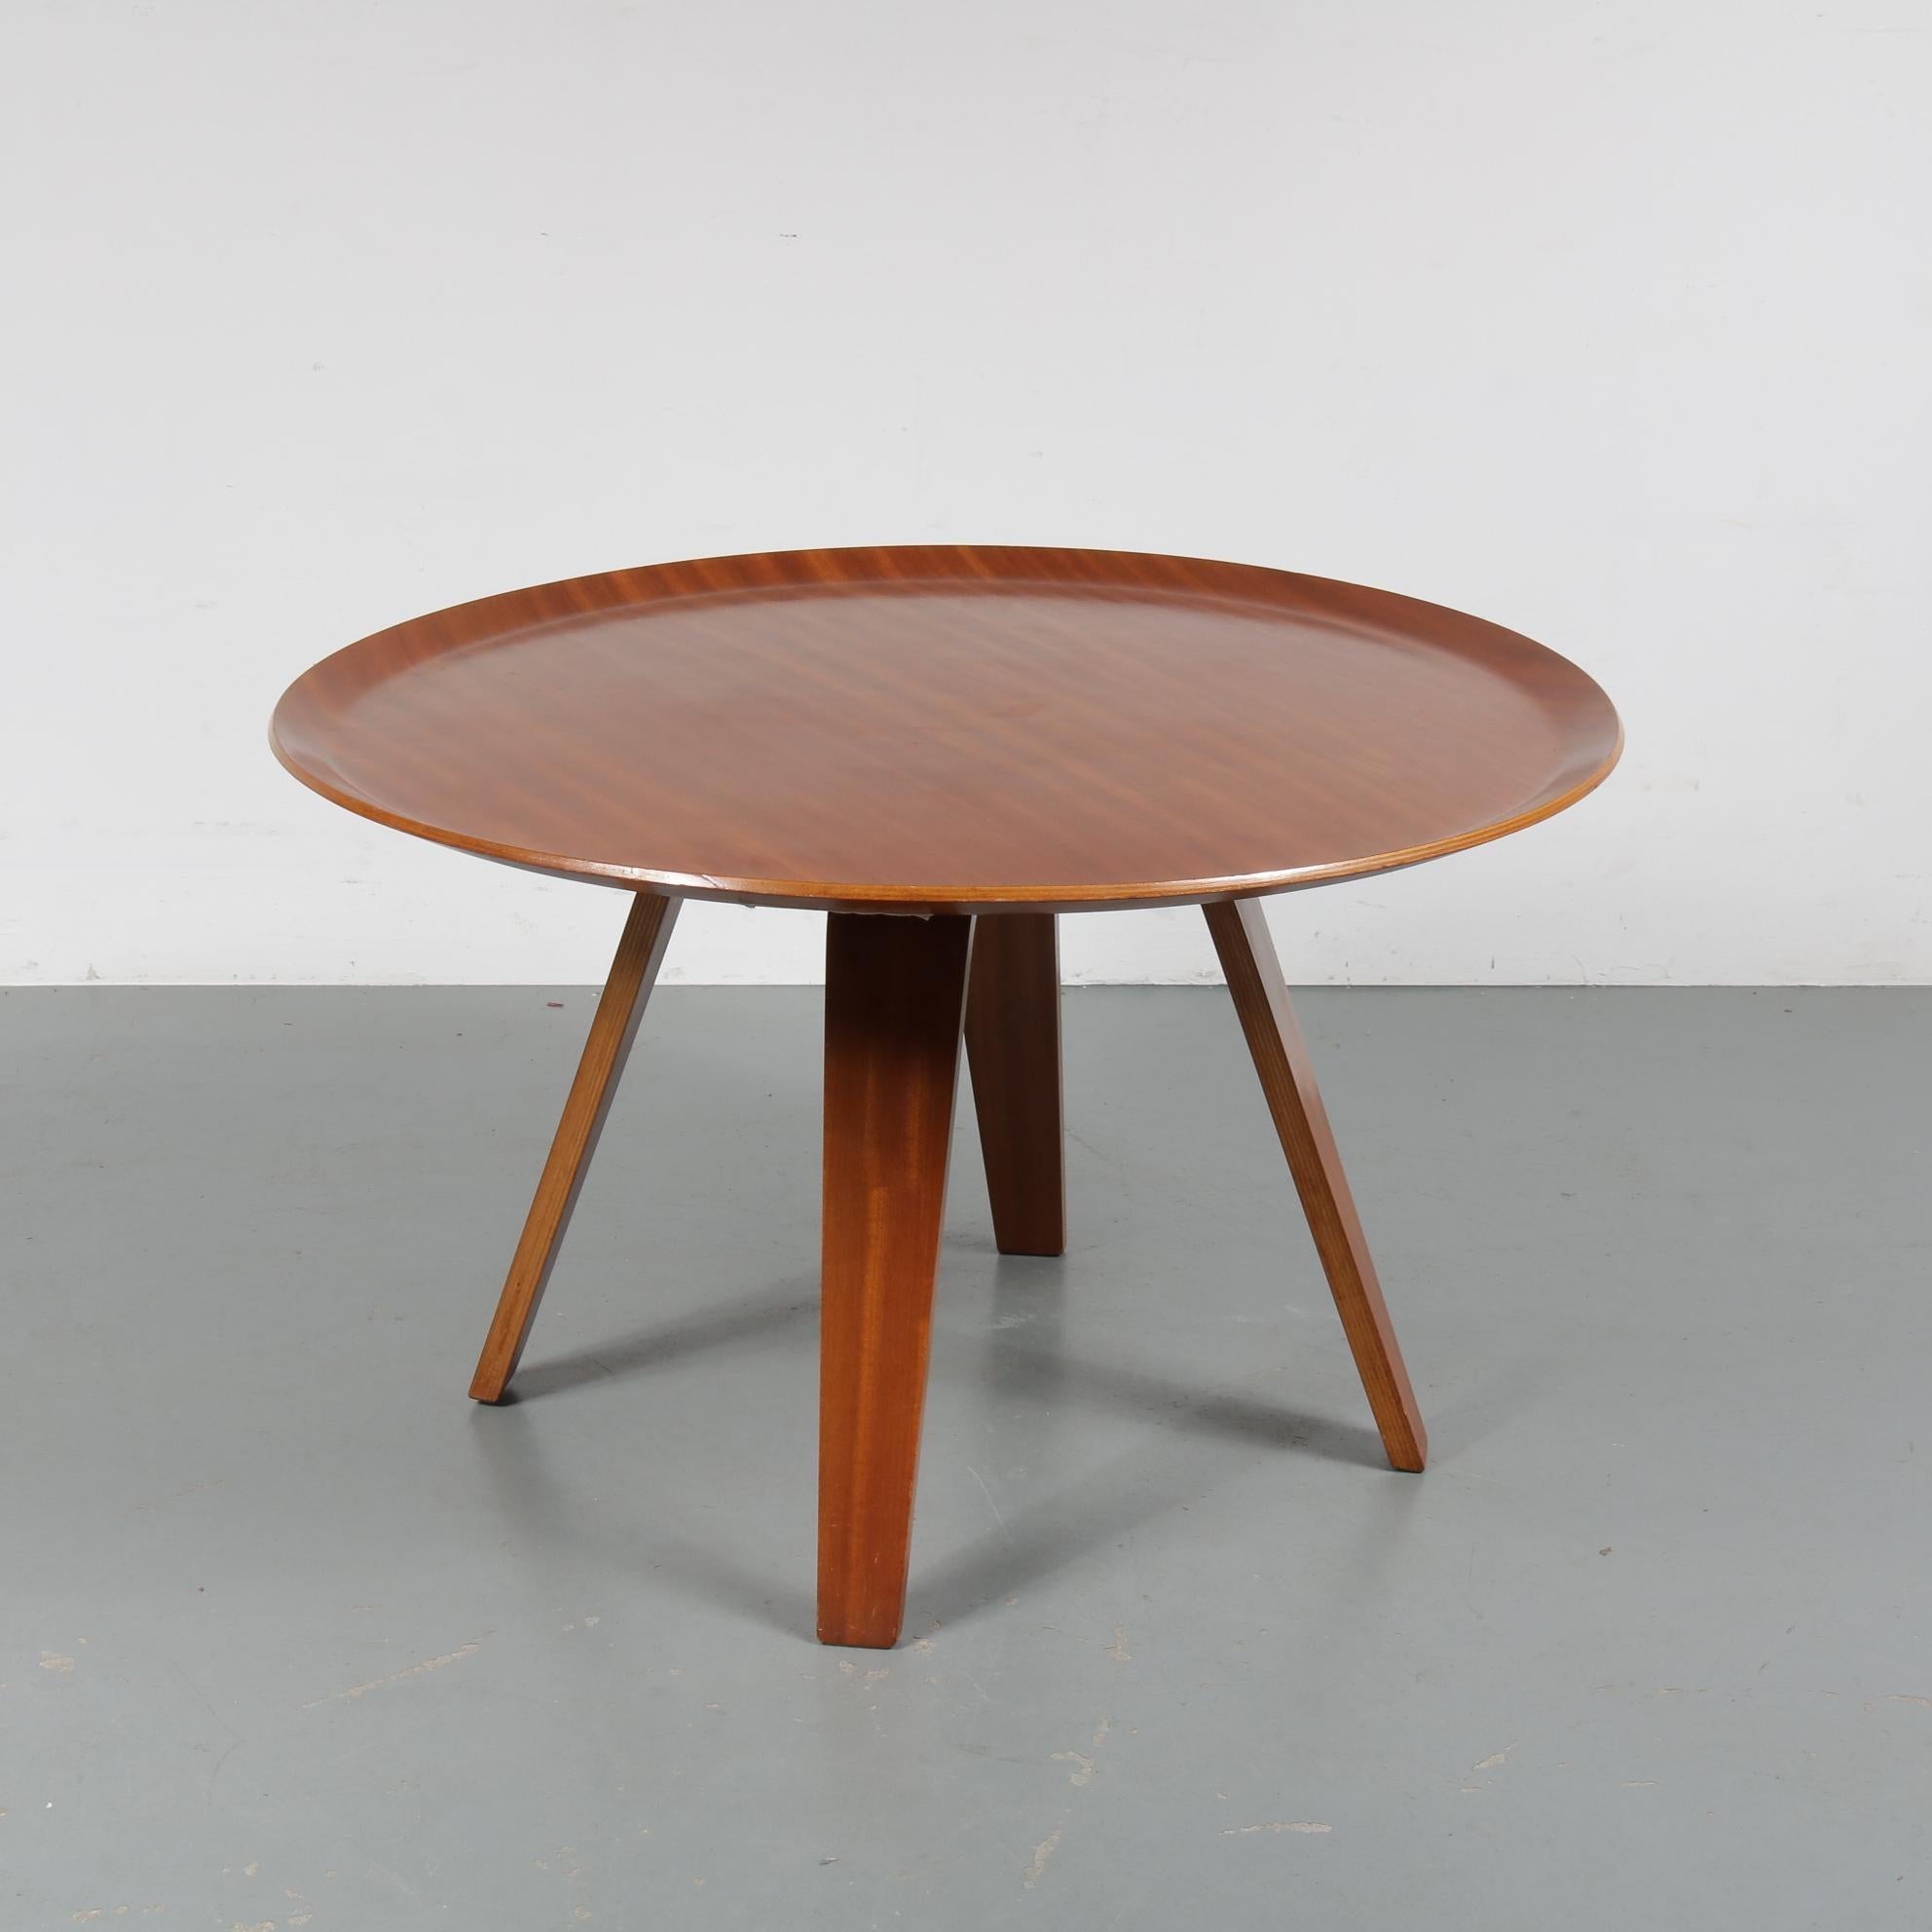 Une très rare table basse conçue par CORS, fabriquée par De Boer Gouda aux Pays-Bas, 1950.

Il est entièrement fabriqué en contreplaqué de teck de haute qualité dans de belles formes rondes et courbées, créant un style très élégant et moderne à la